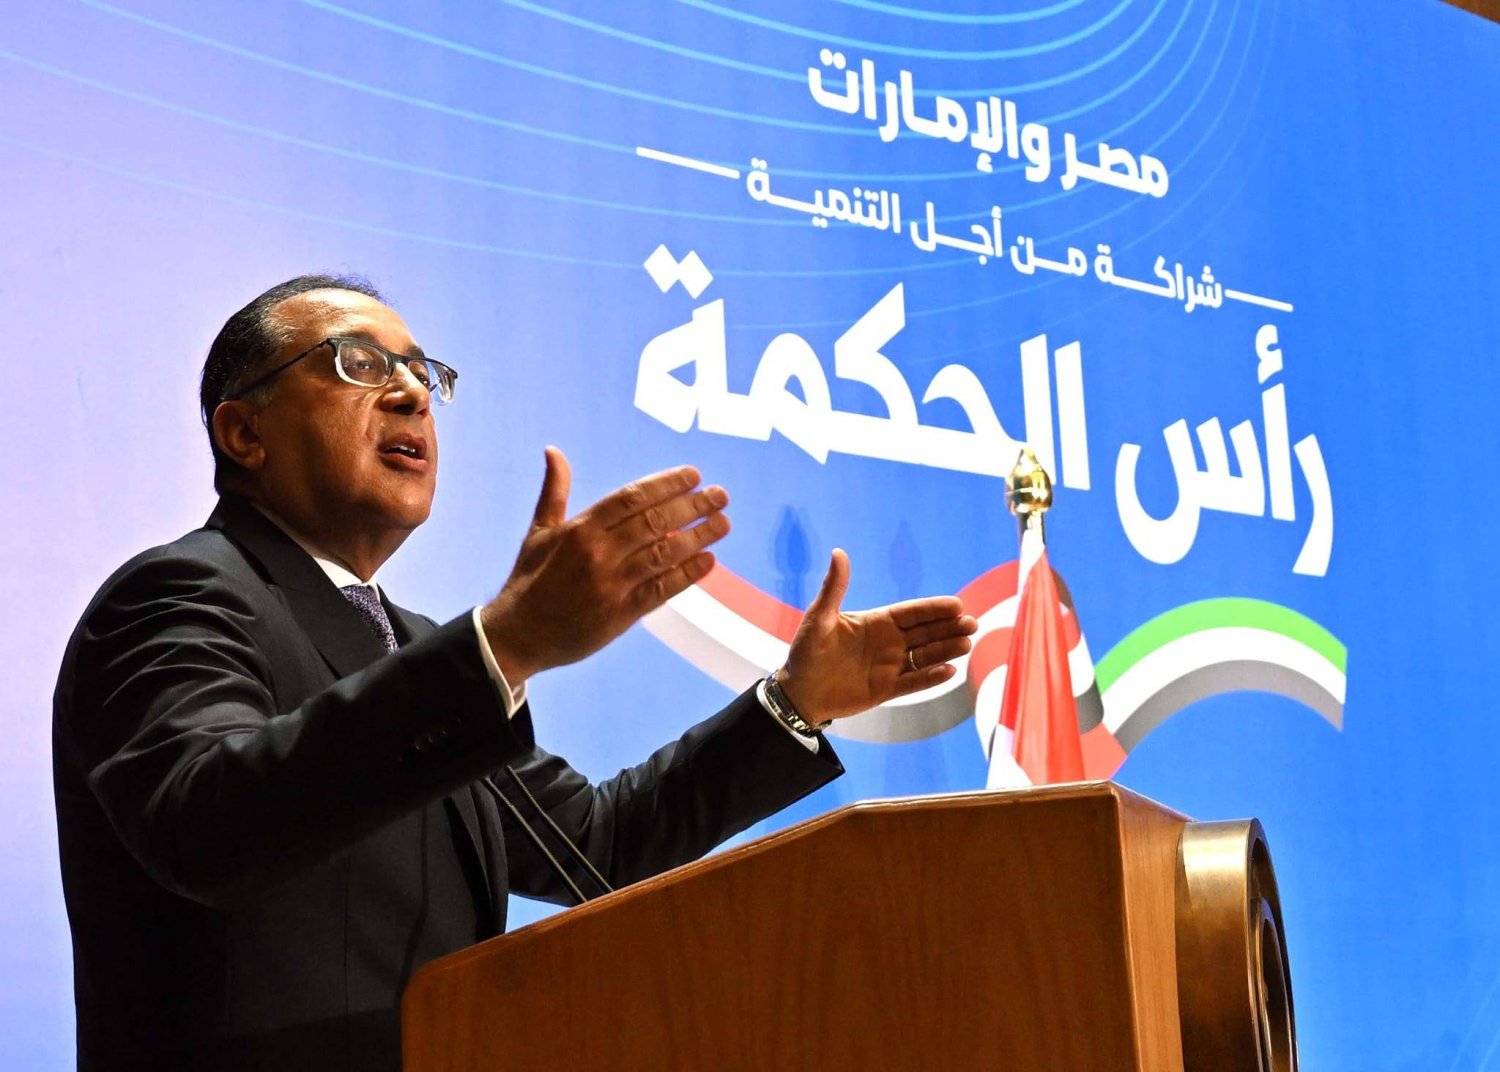 مصطفى مدبولي خلال الإعلان عن "الصفقة الضخمة" (مجلس الوزراء المصري)